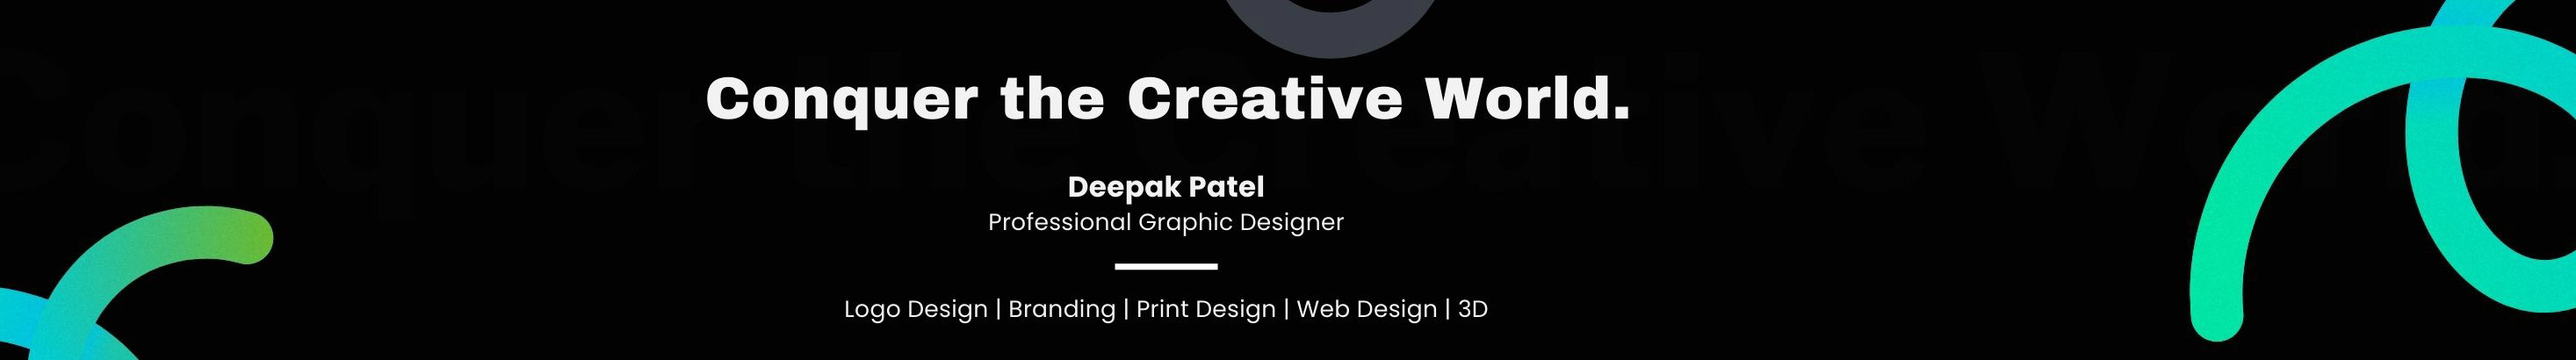 Deepak Patel's profile banner